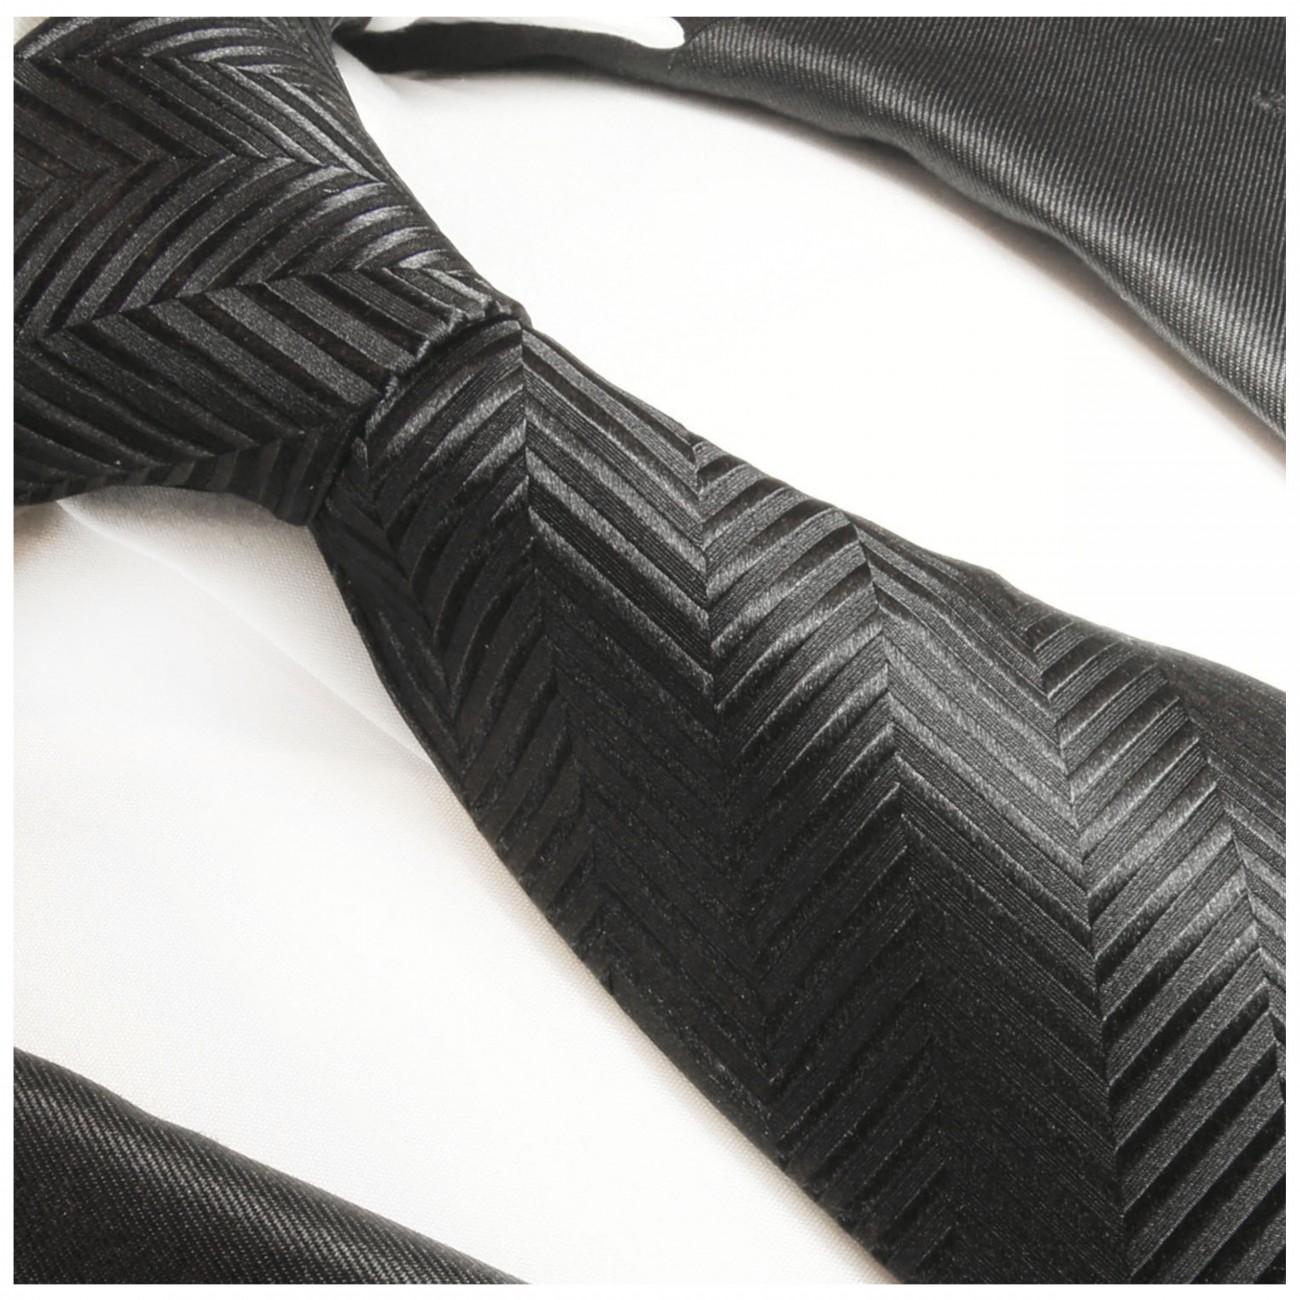 Krawatte schwarz uni Seidenkrawatte - Seide - Krawatte mit Einstecktuch und Manschettenknöpfe